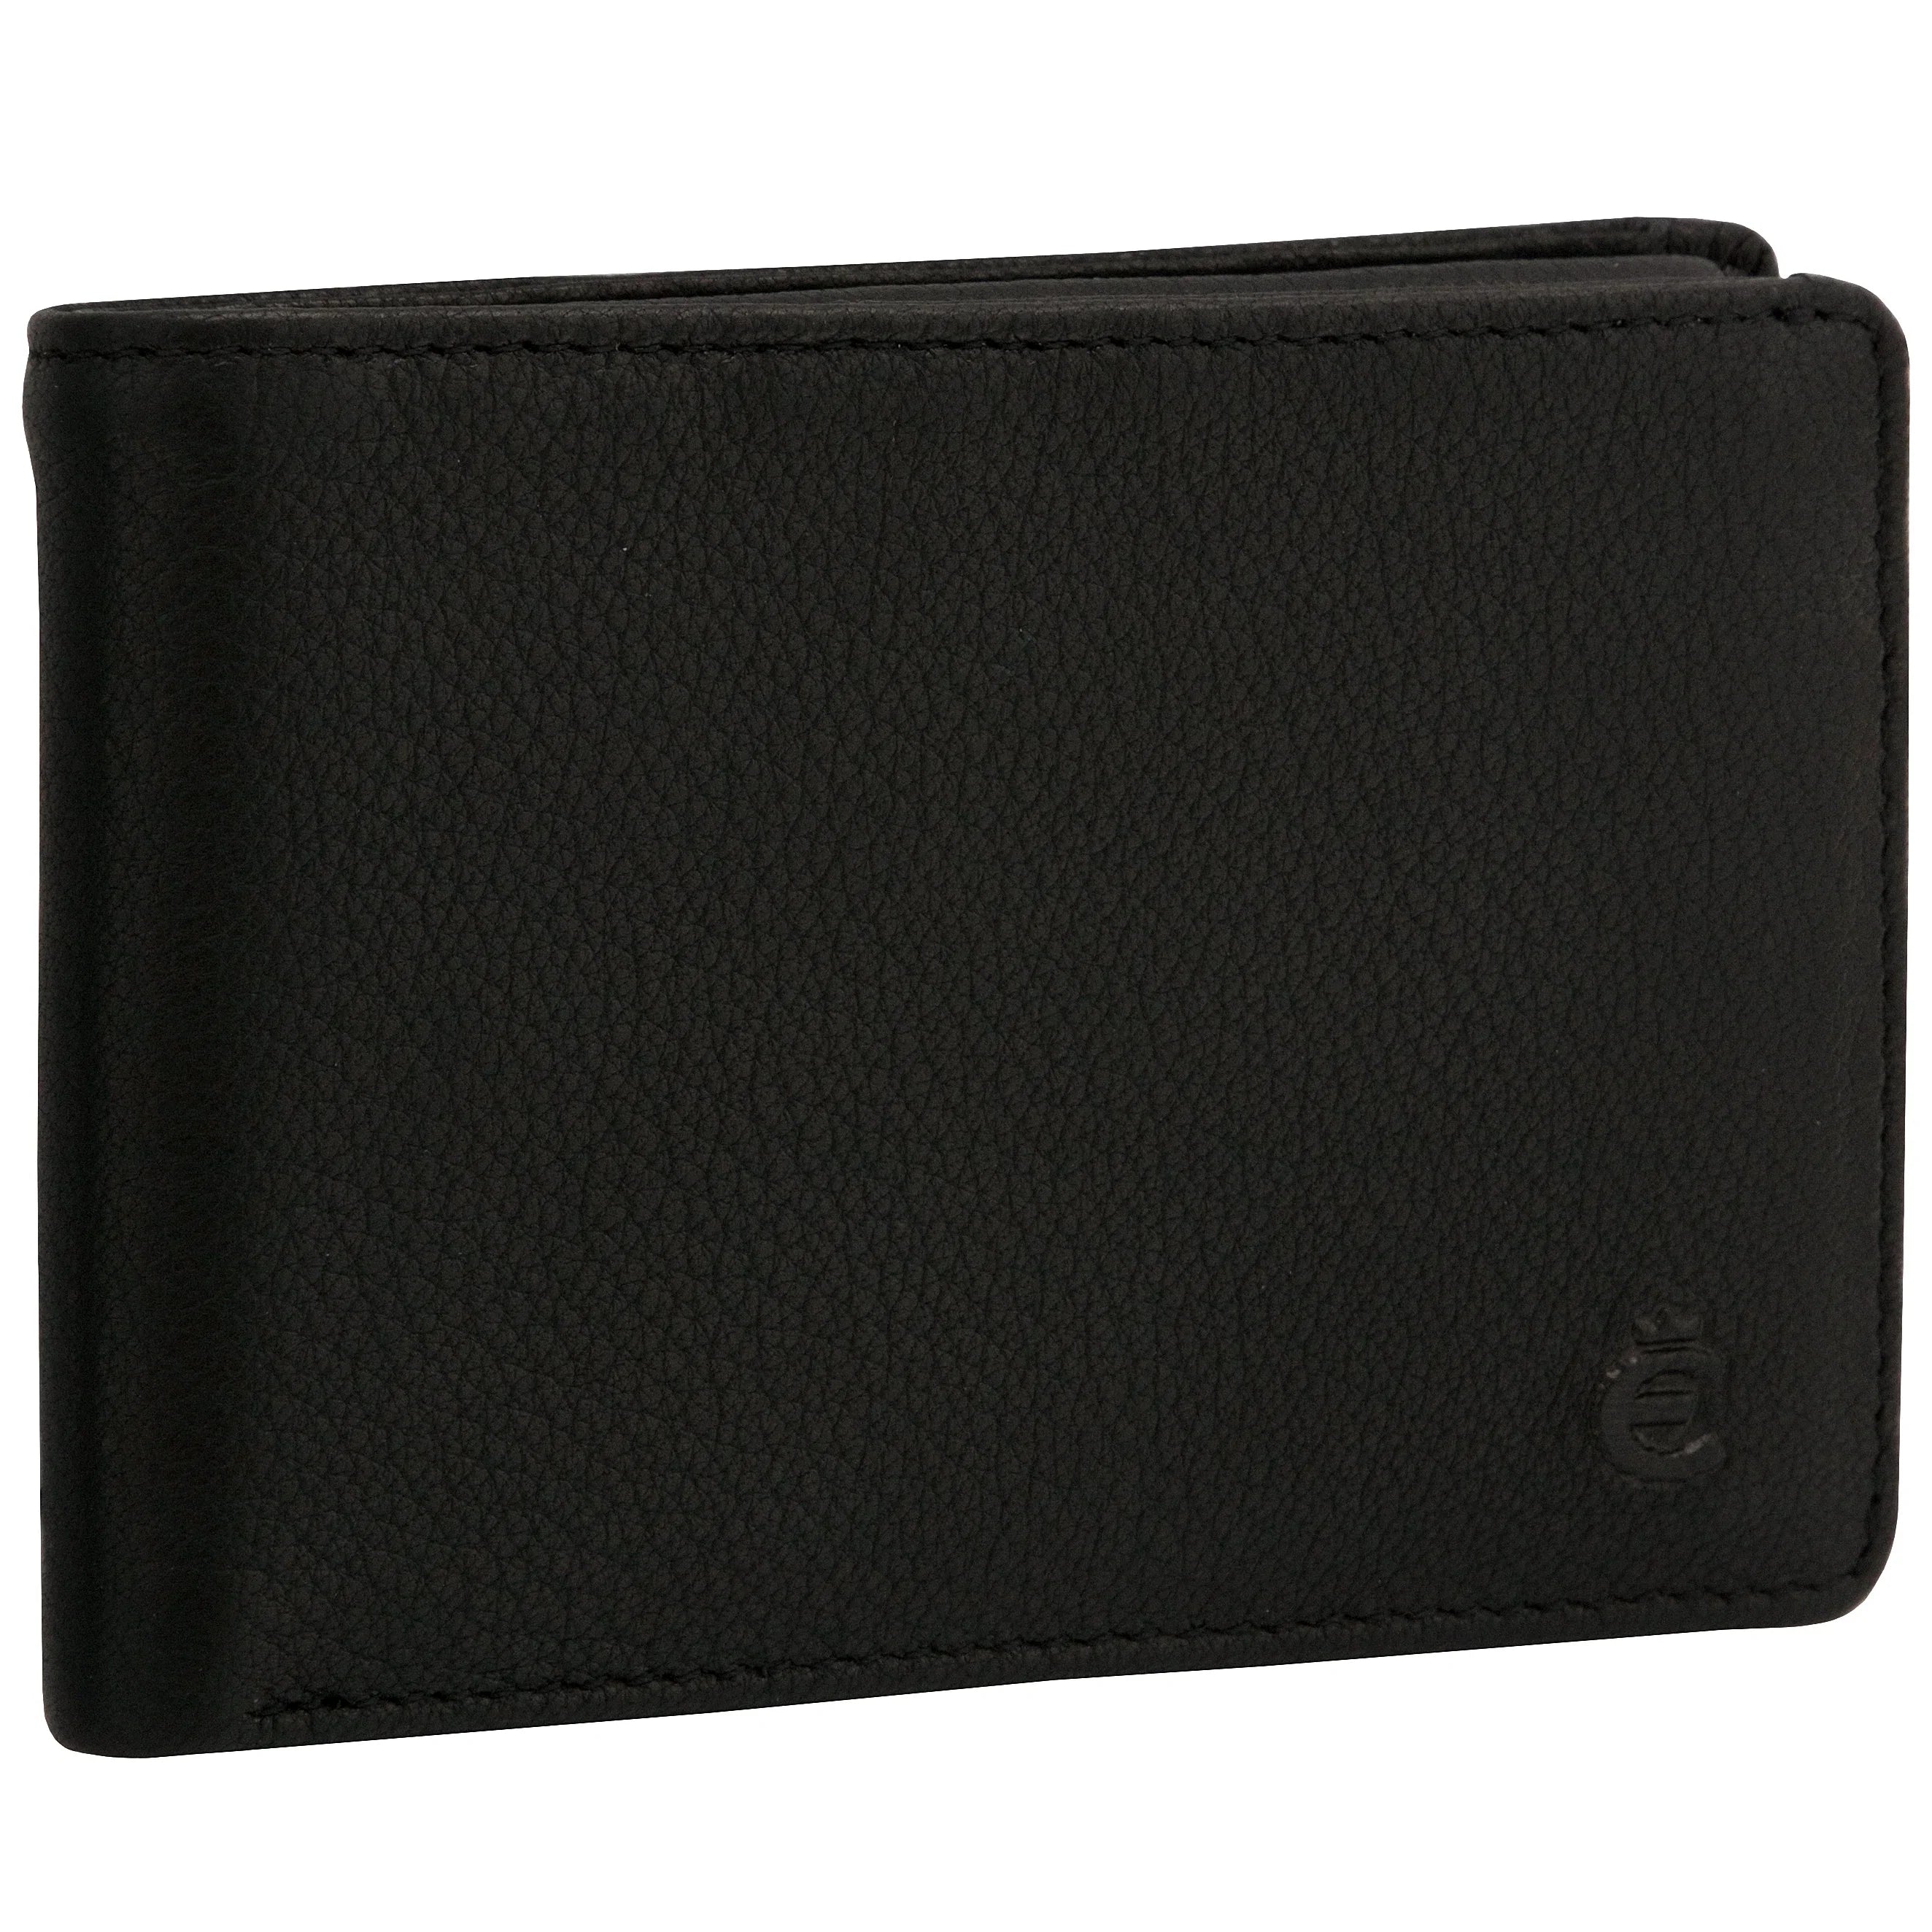 Esquire Oslo Texas Kreditkartenetui mit RFID-Schutz 11 cm - schwarz